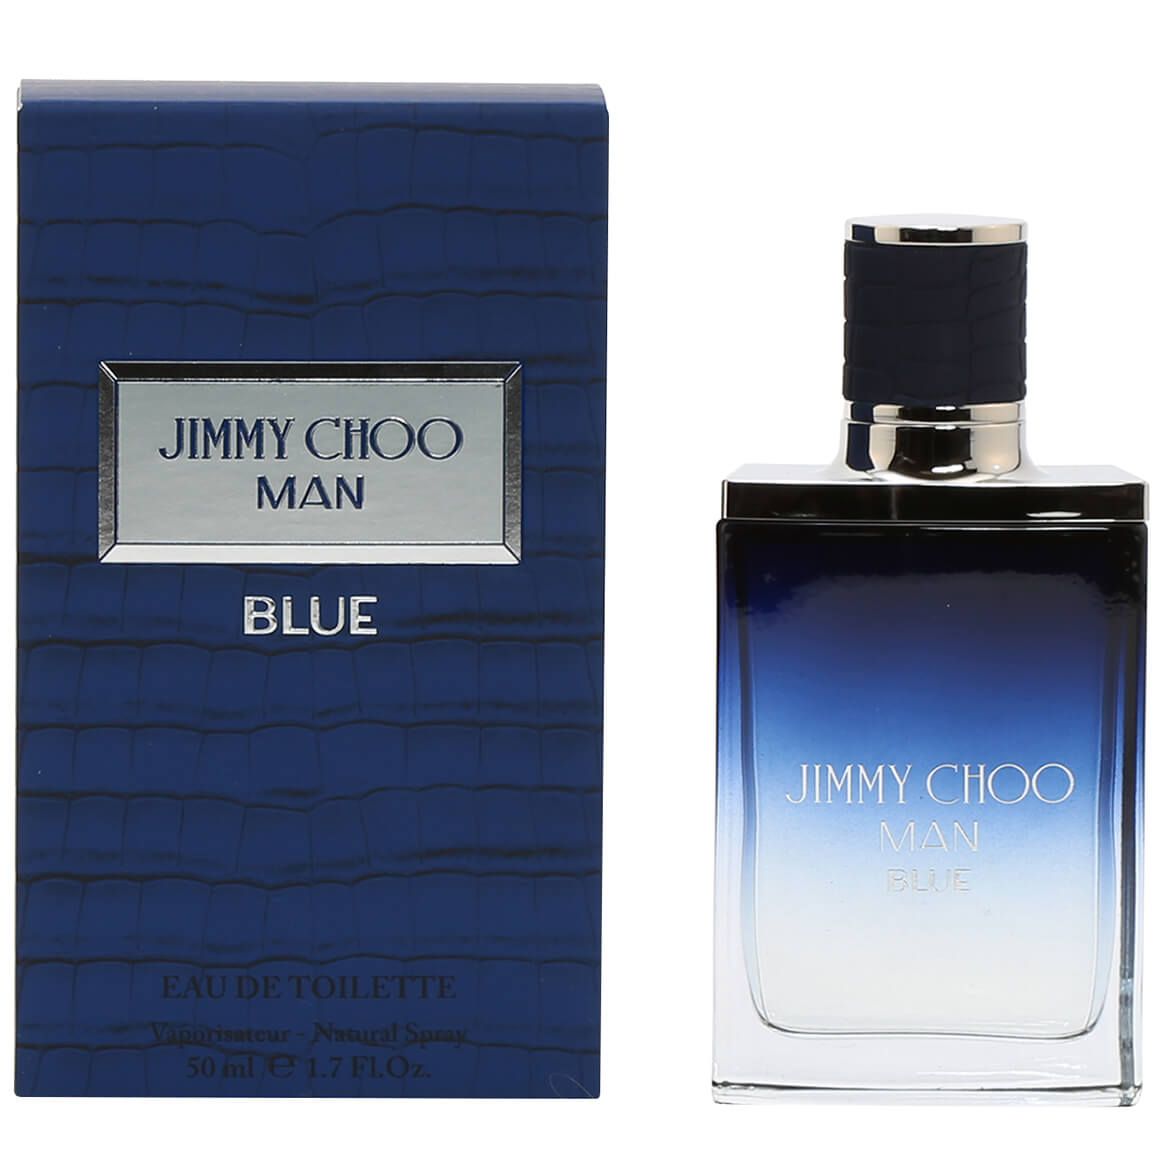 Jimmy Choo Man Blue EDT, 1.7 fl. oz. + '-' + 377128